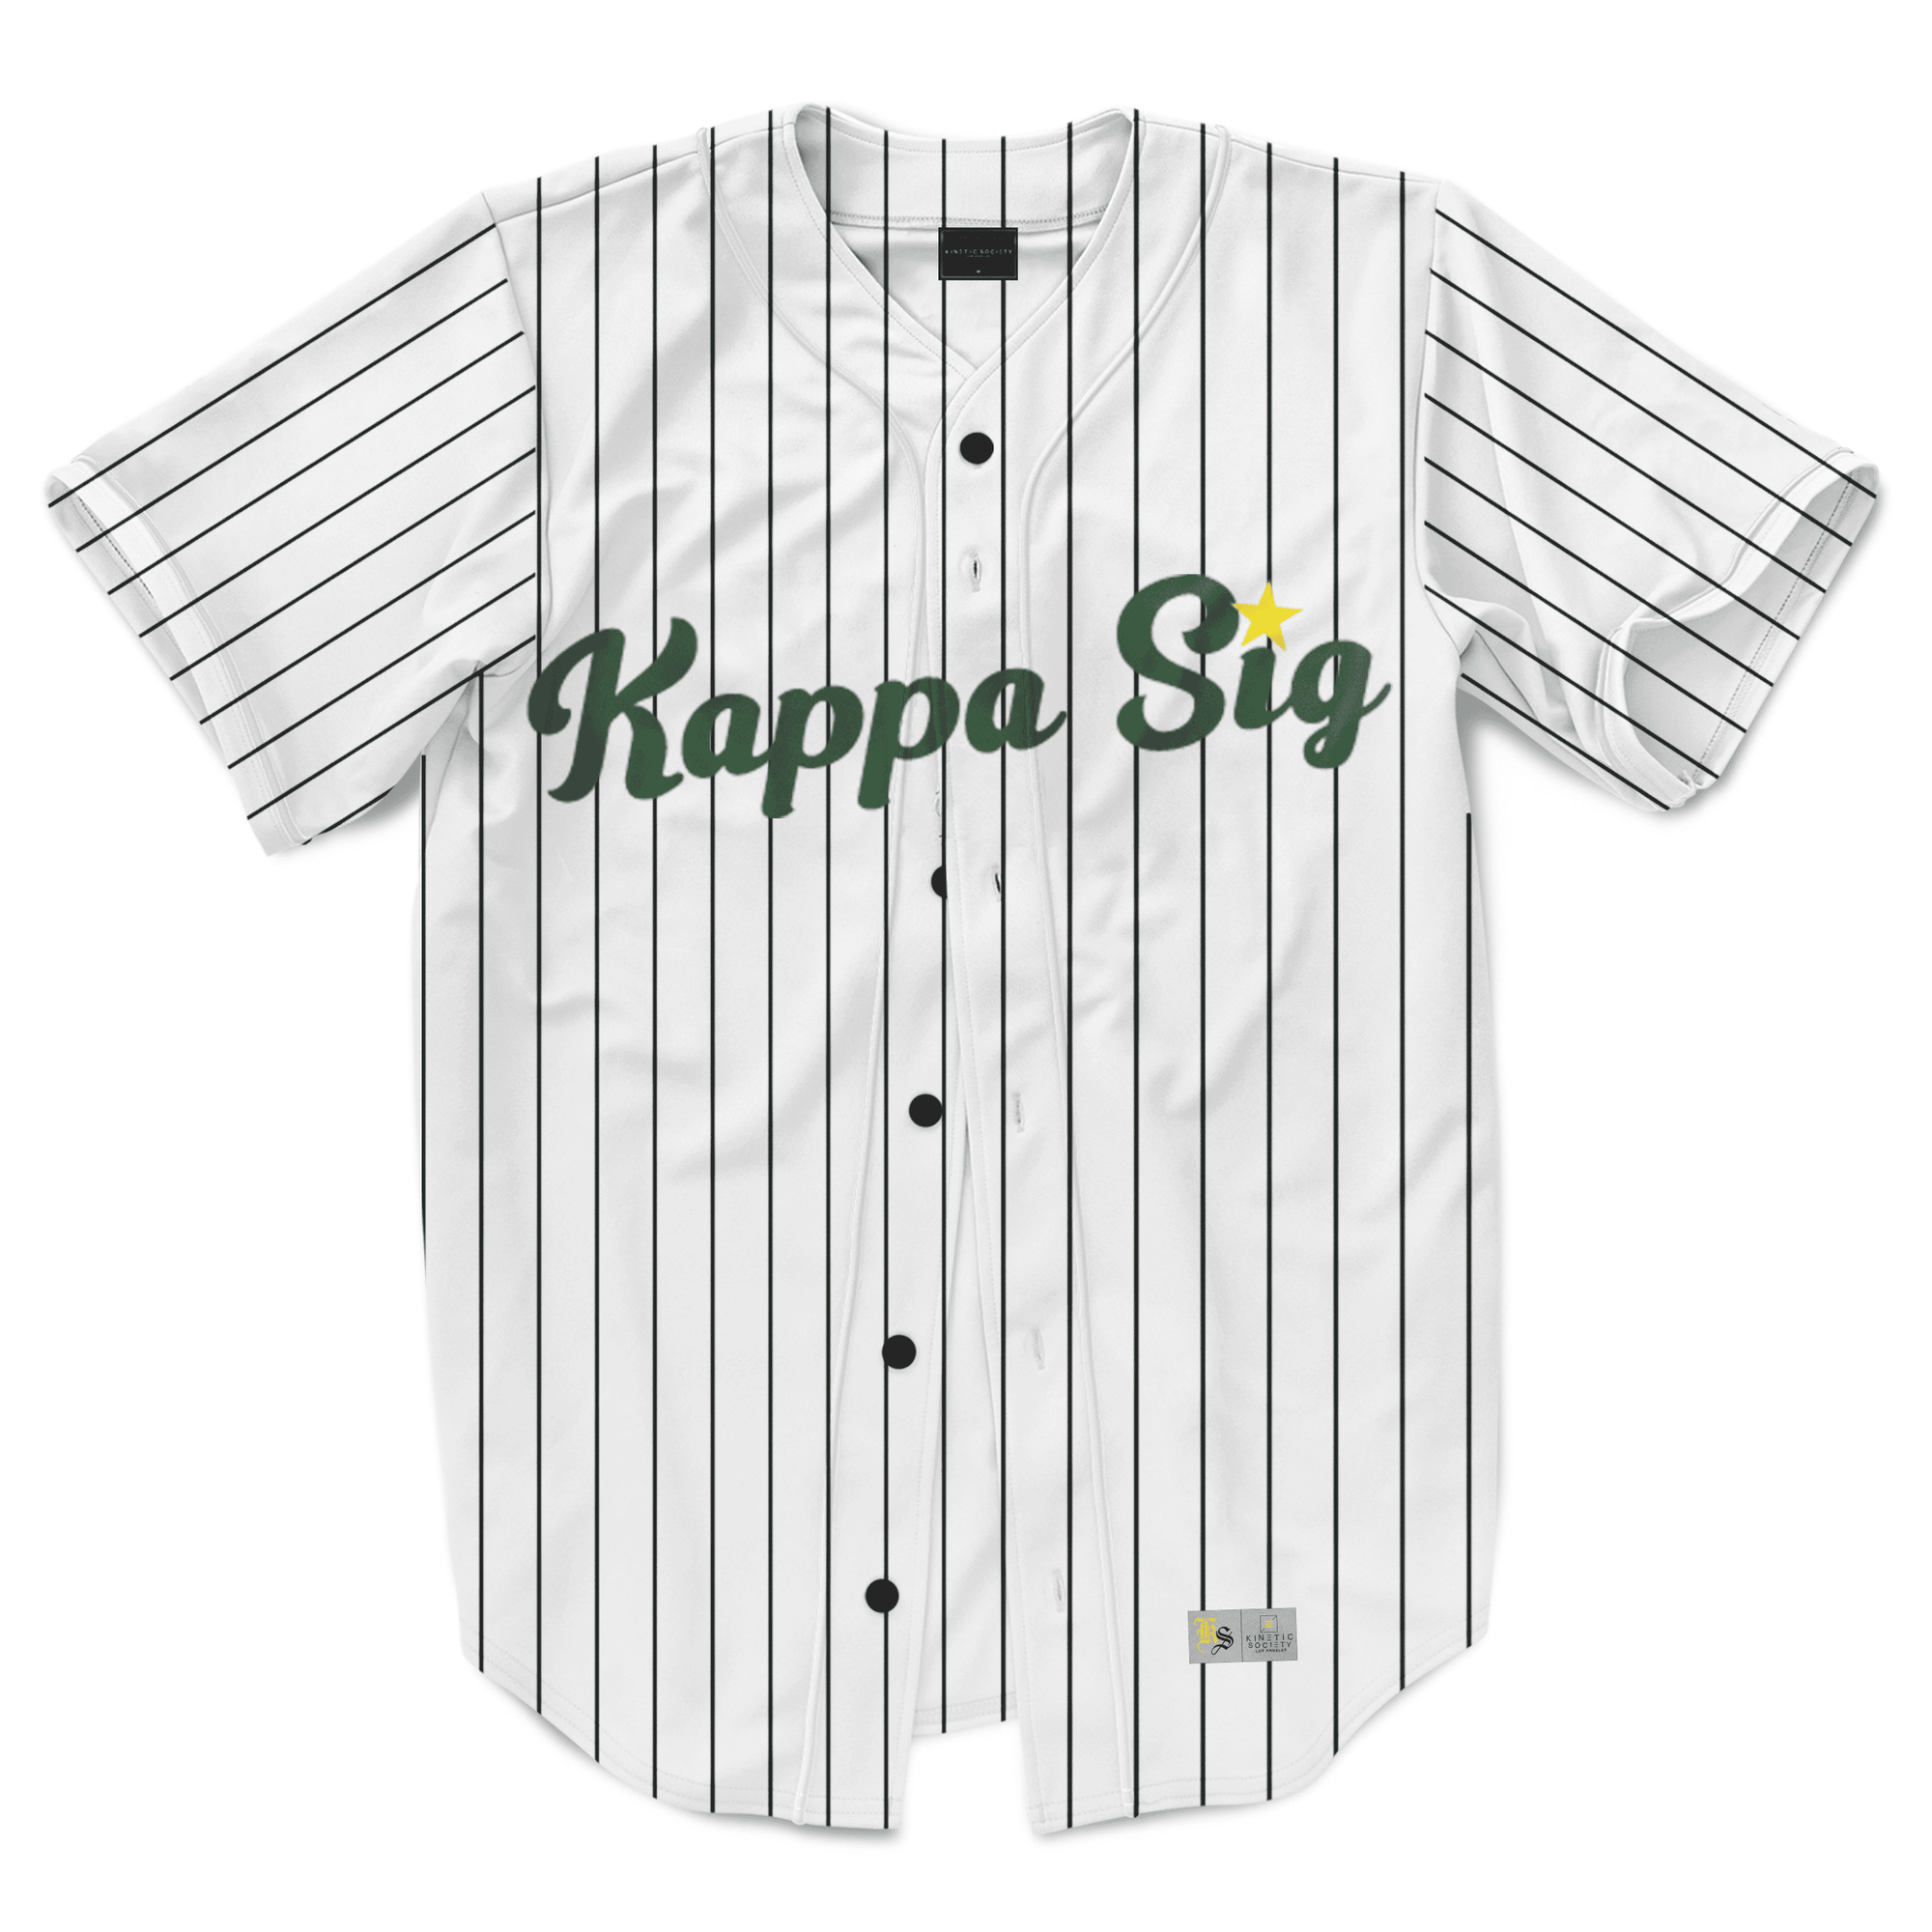 Kappa Sigma - Green Pinstripe Baseball Jersey